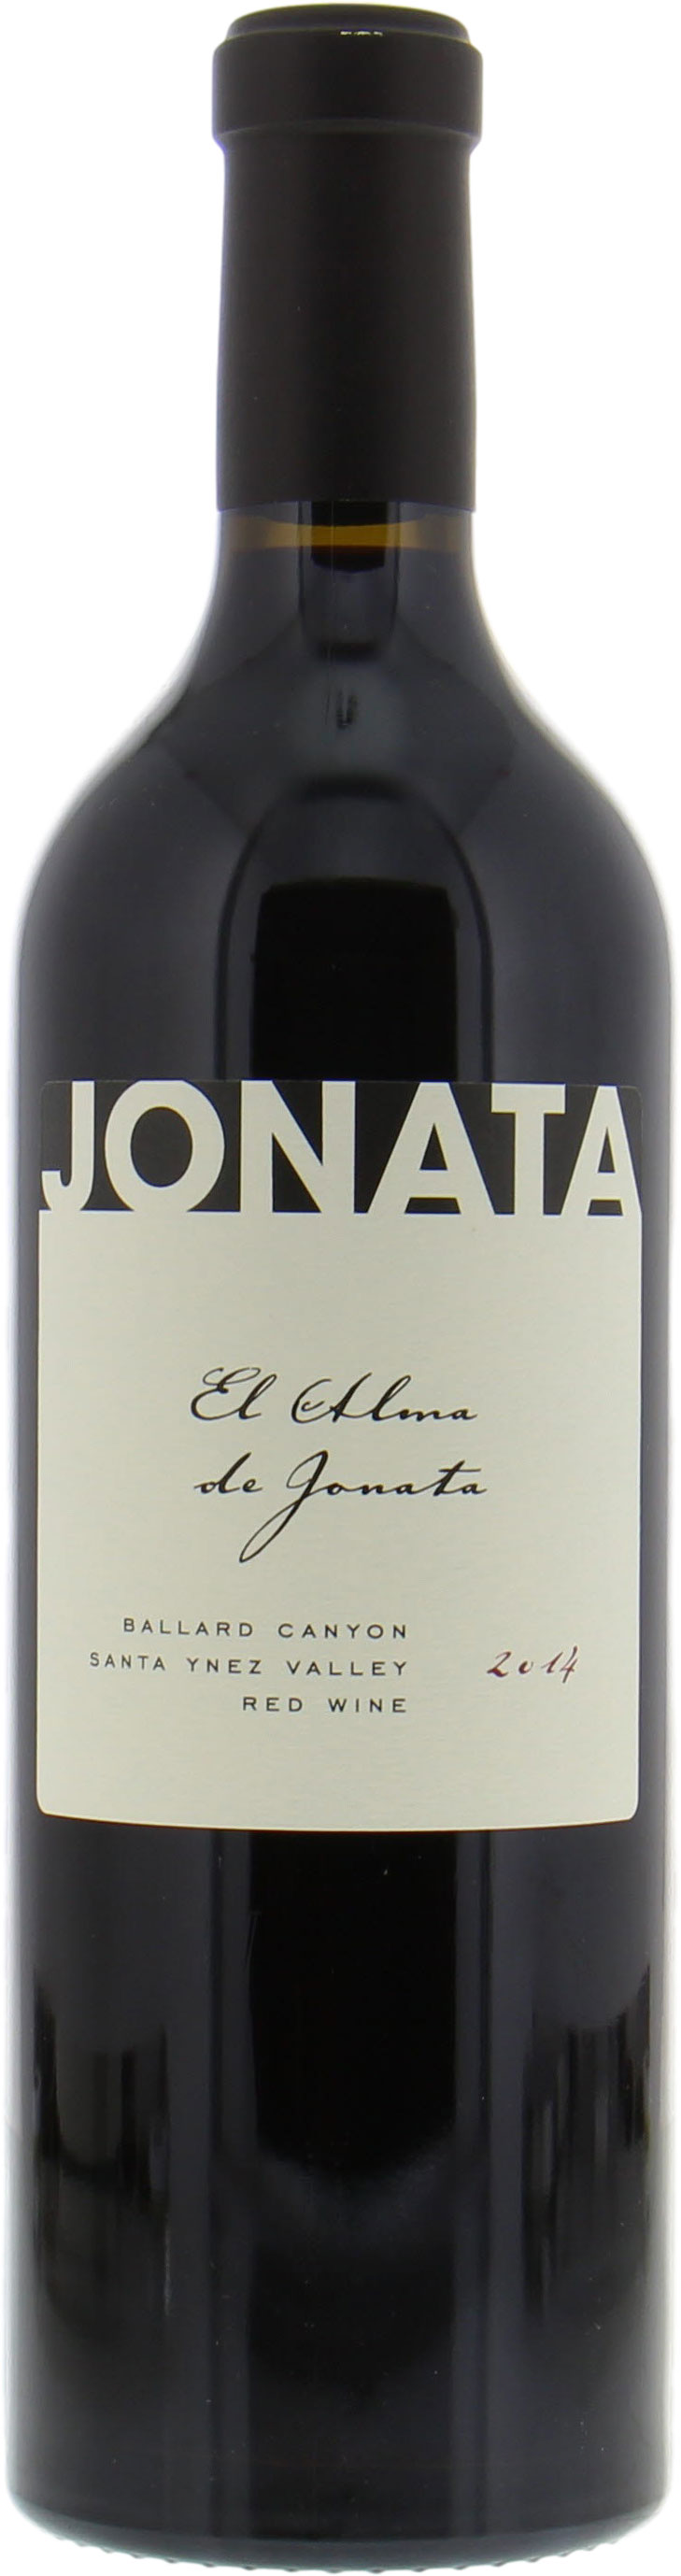 Jonata - El Alma de Jonata 2014